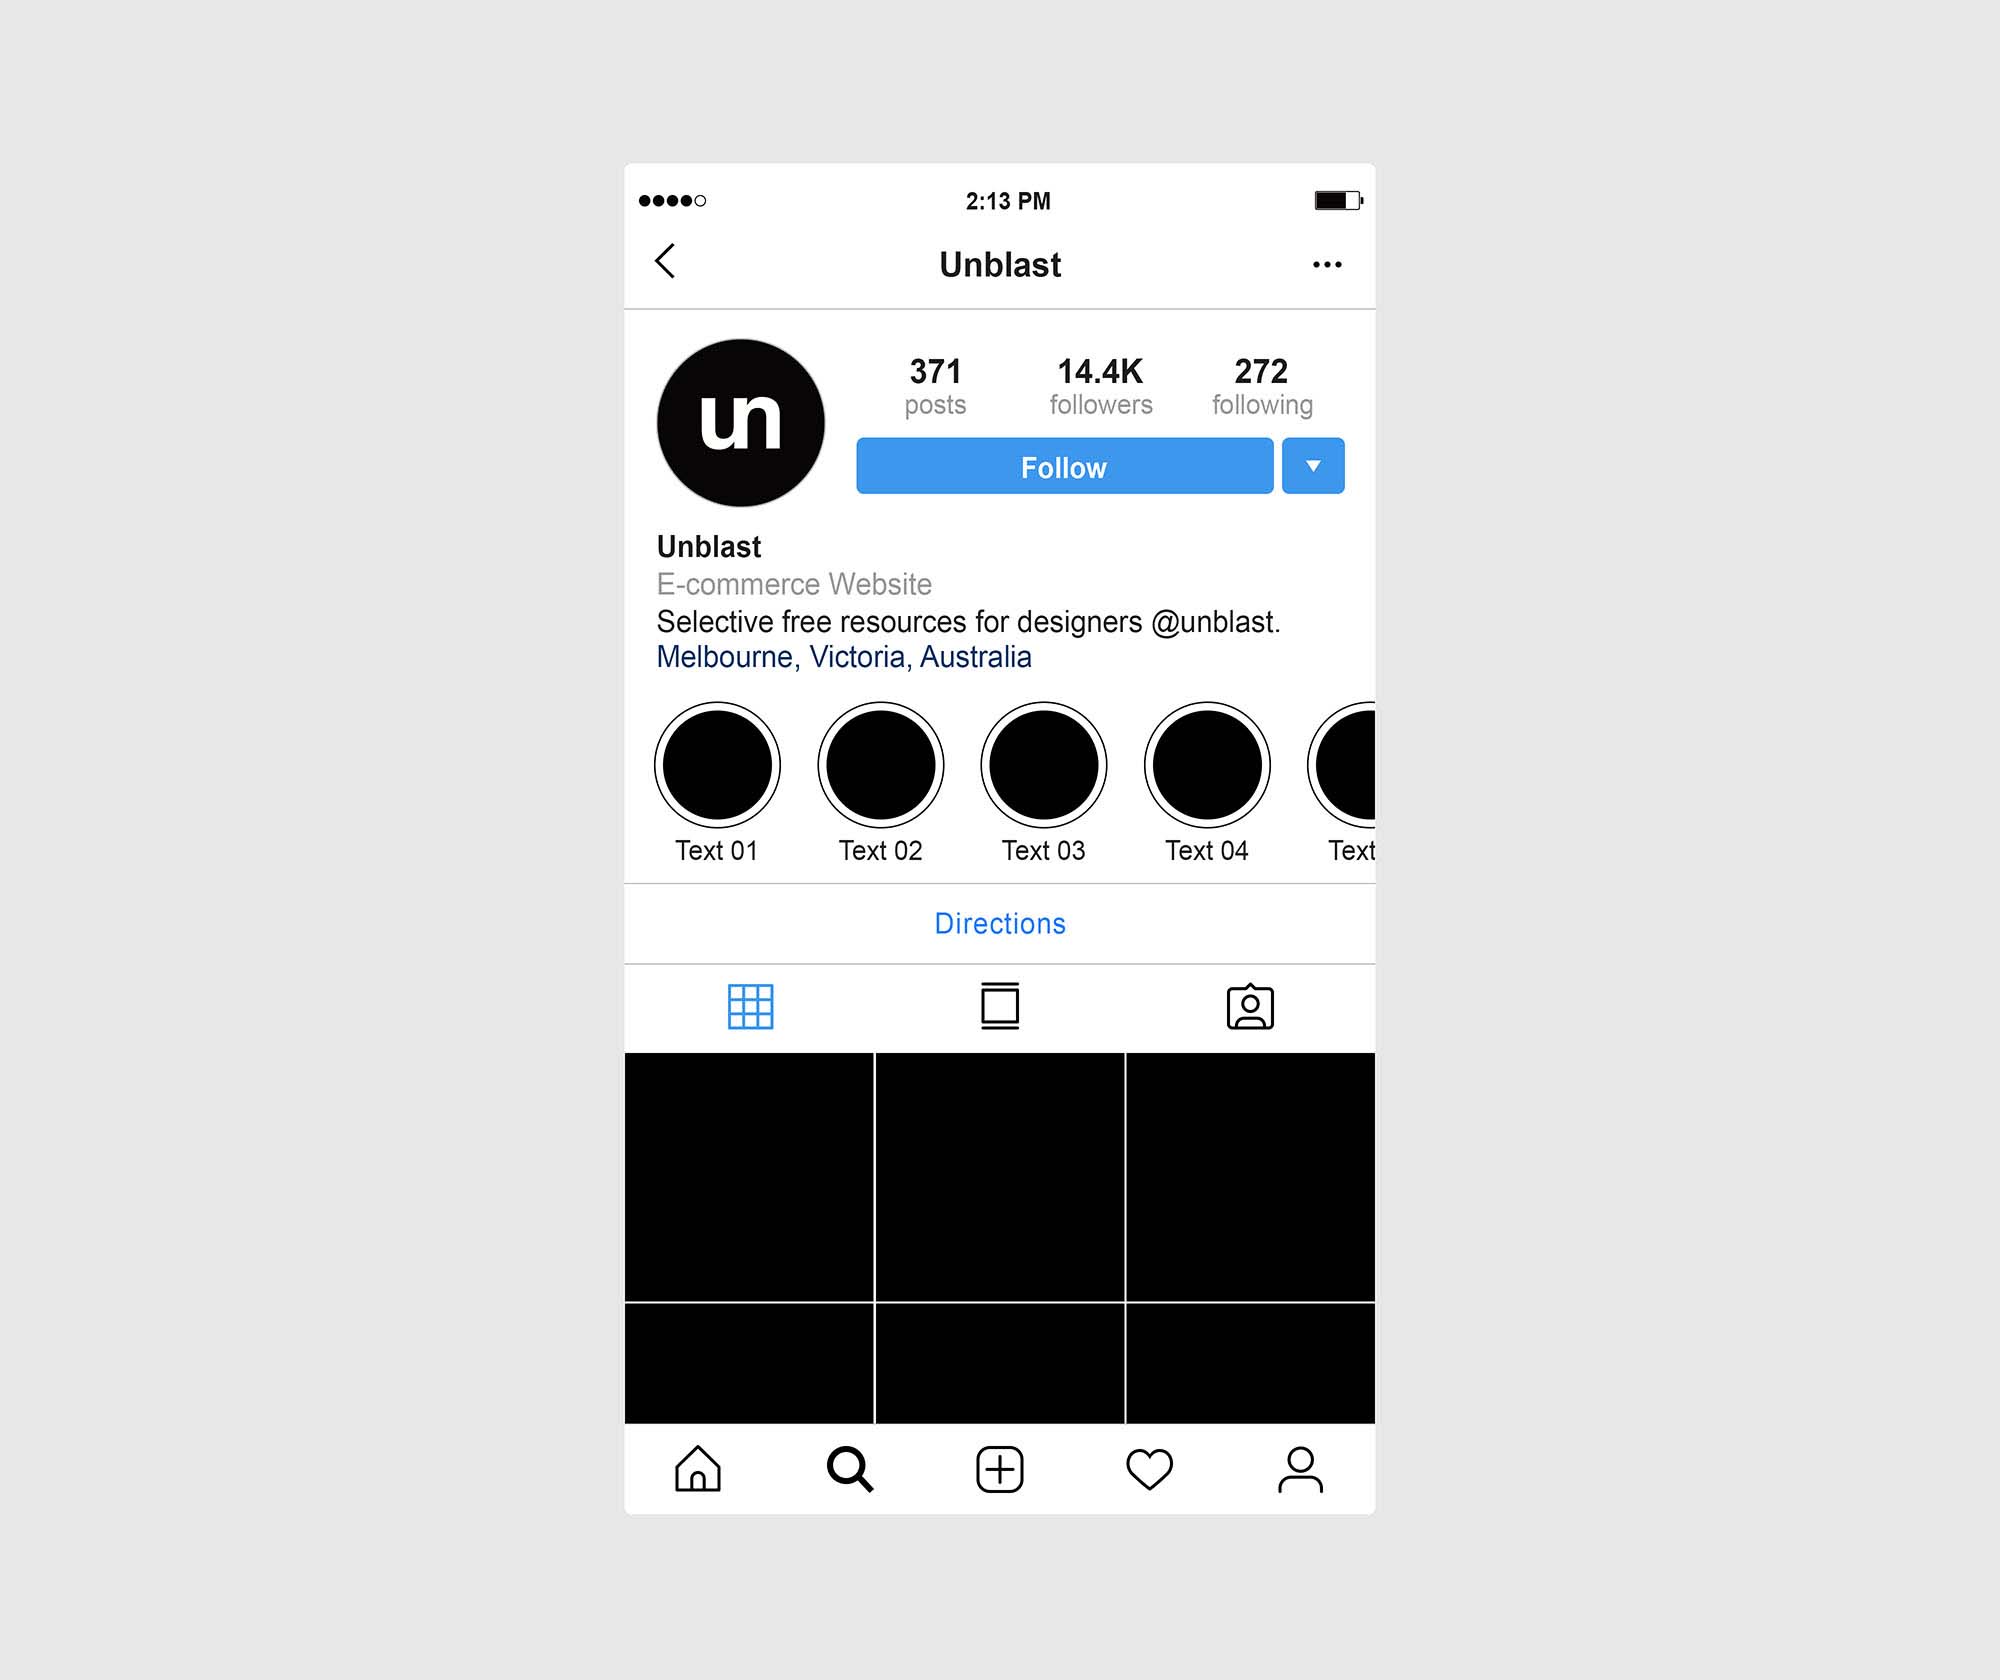 Chúng tôi đã cập nhật phiên bản mới với thiết kế đơn giản nhưng hiện đại phù hợp với nhiều mục đích. Mang đến cho trang cá nhân Instagram của bạn một hình thức độc đáo và dễ dàng tùy chỉnh, giúp bạn gây ấn tượng và thu hút nhiều lượt tương tác nhất. Hãy truy cập ngay để cập nhật cho trang cá nhân của bạn!